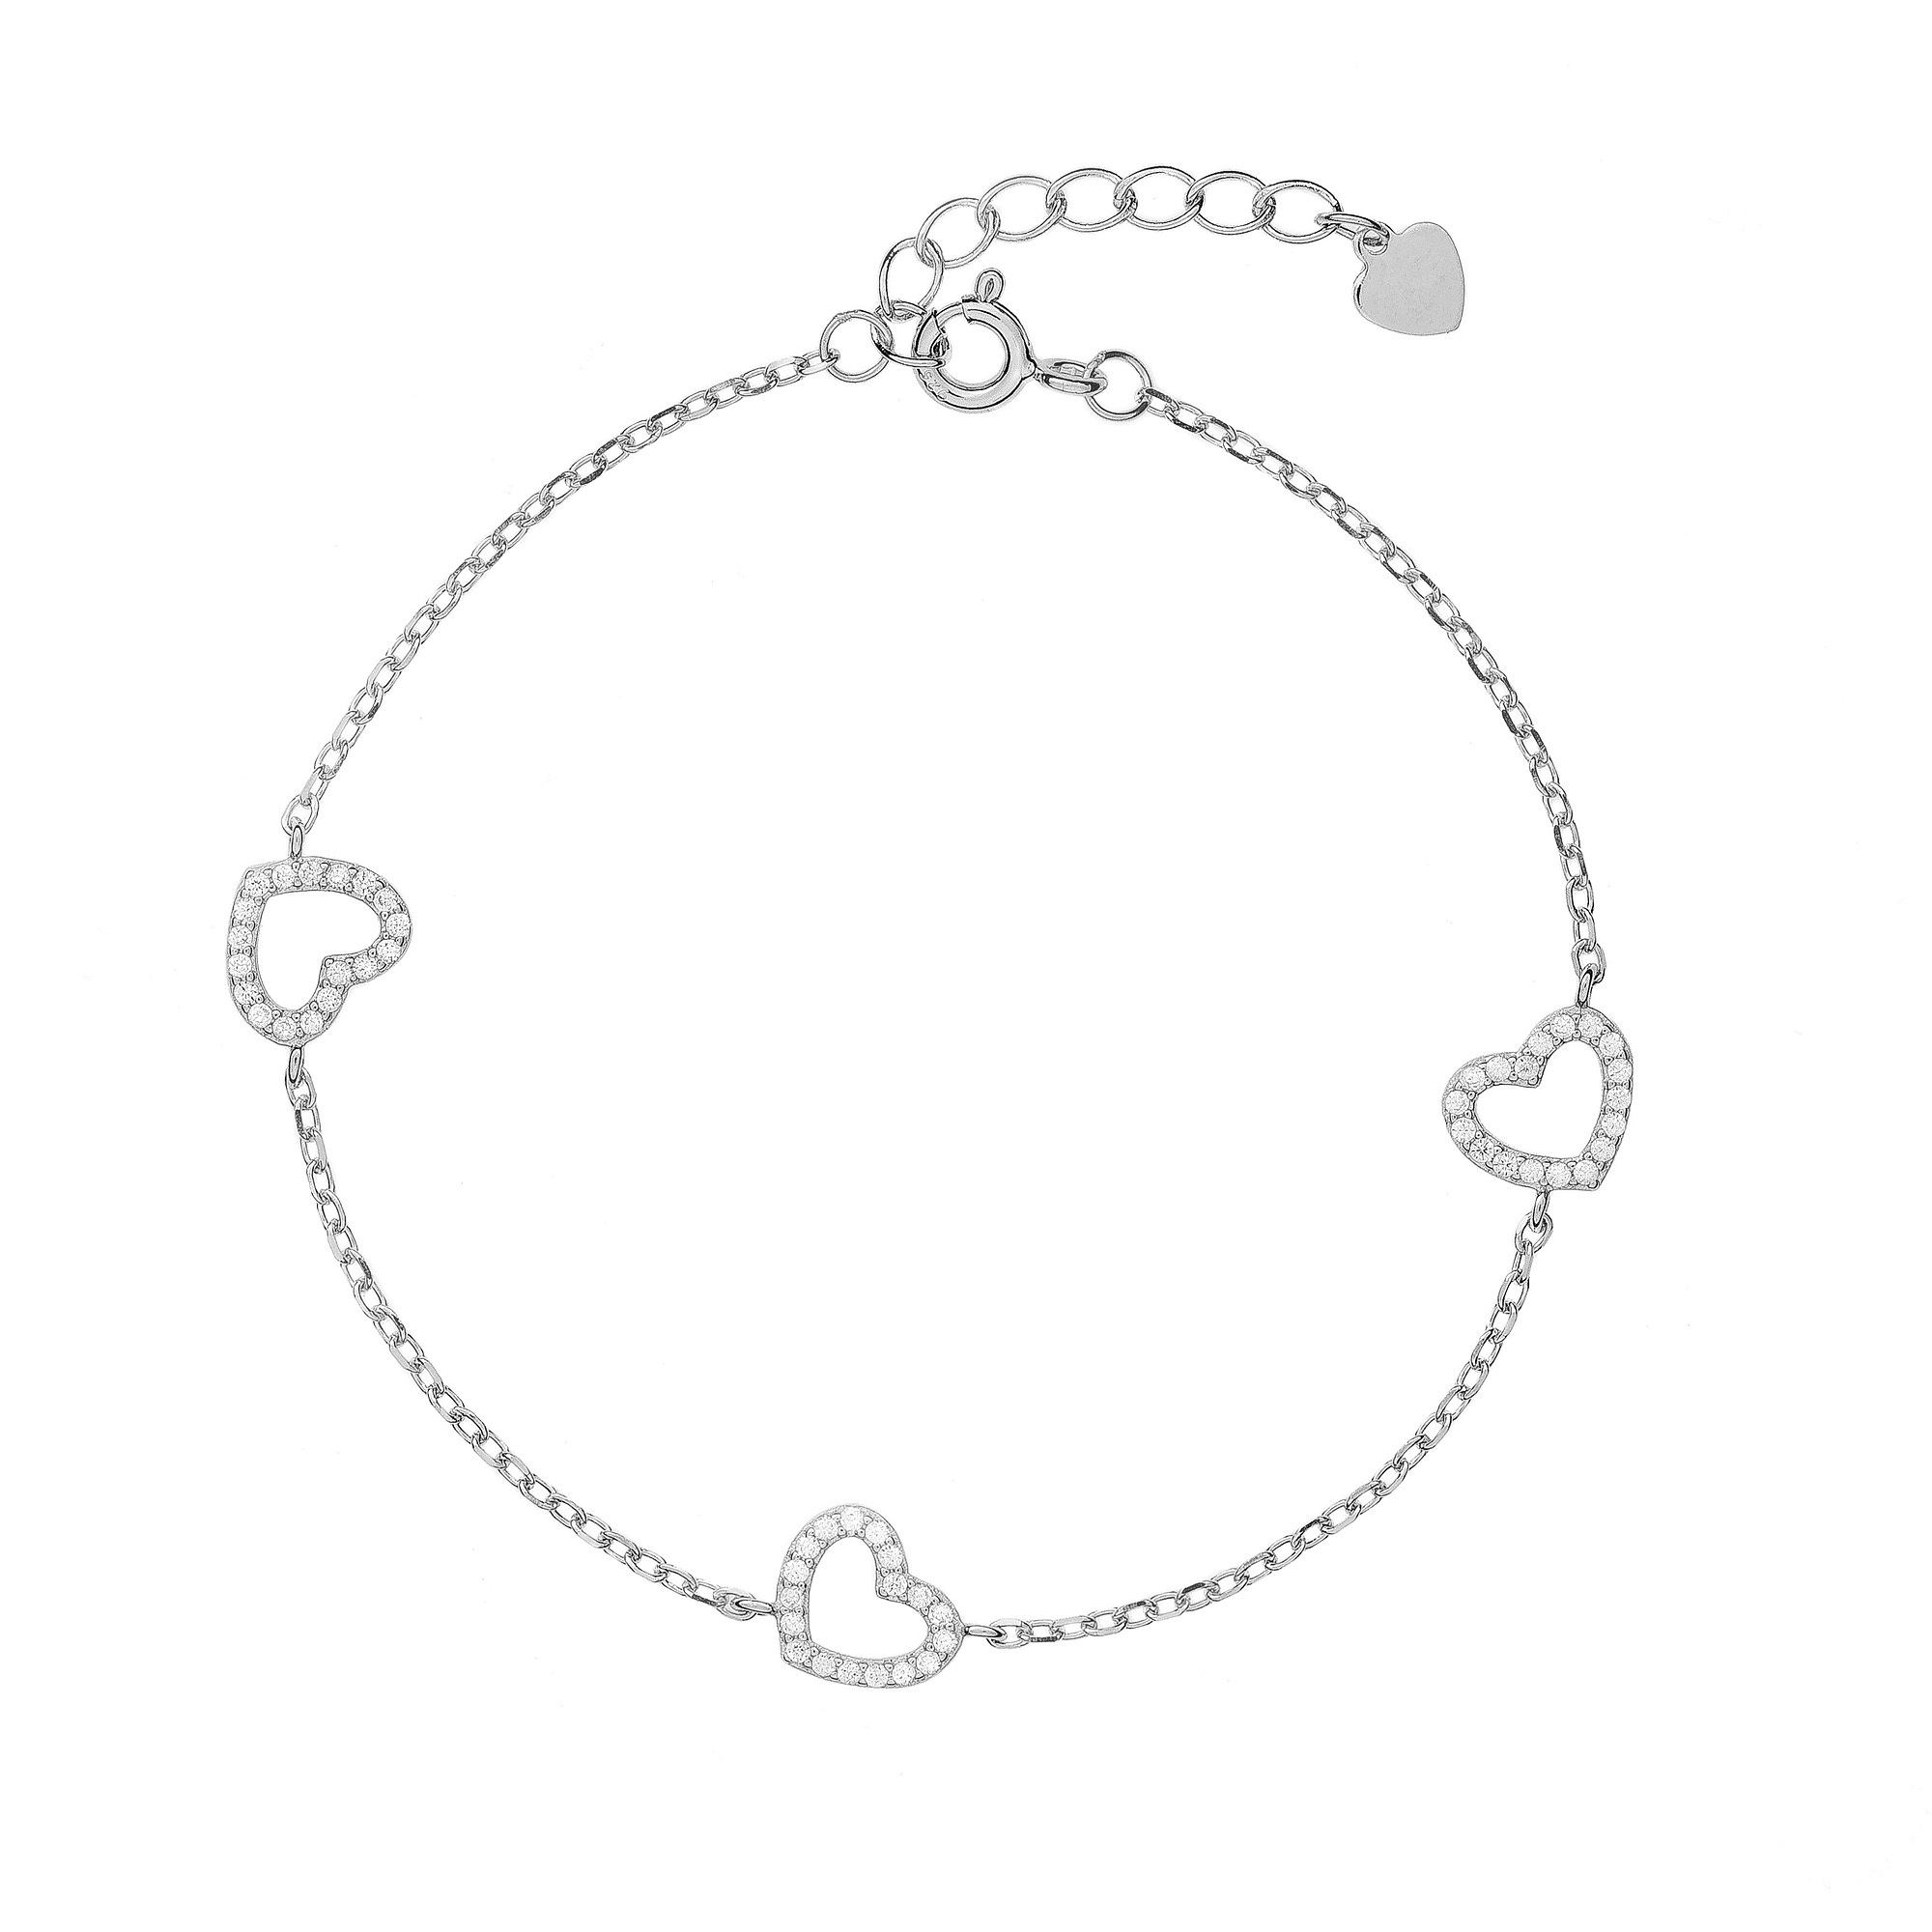 AGAIN Jewelry Romantický stříbrný náramek se srdíčky AJNR0021